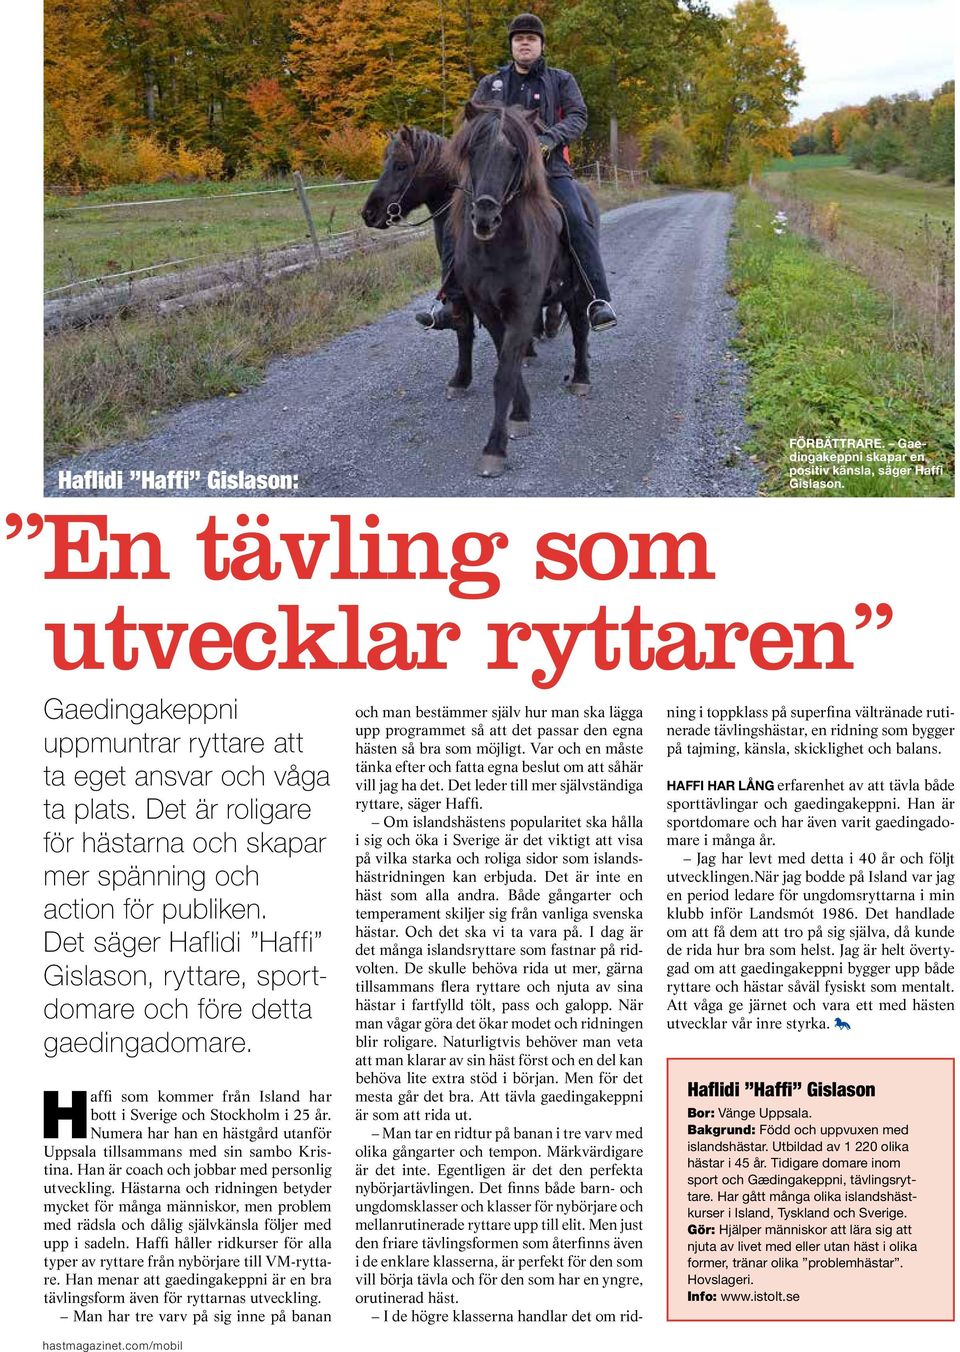 Det säger Haflidi Haffi Gislason, ryttare, sportdomare och före detta gaedingadomare. Haffi som kommer från Island har bott i Sverige och Stockholm i 25 år.